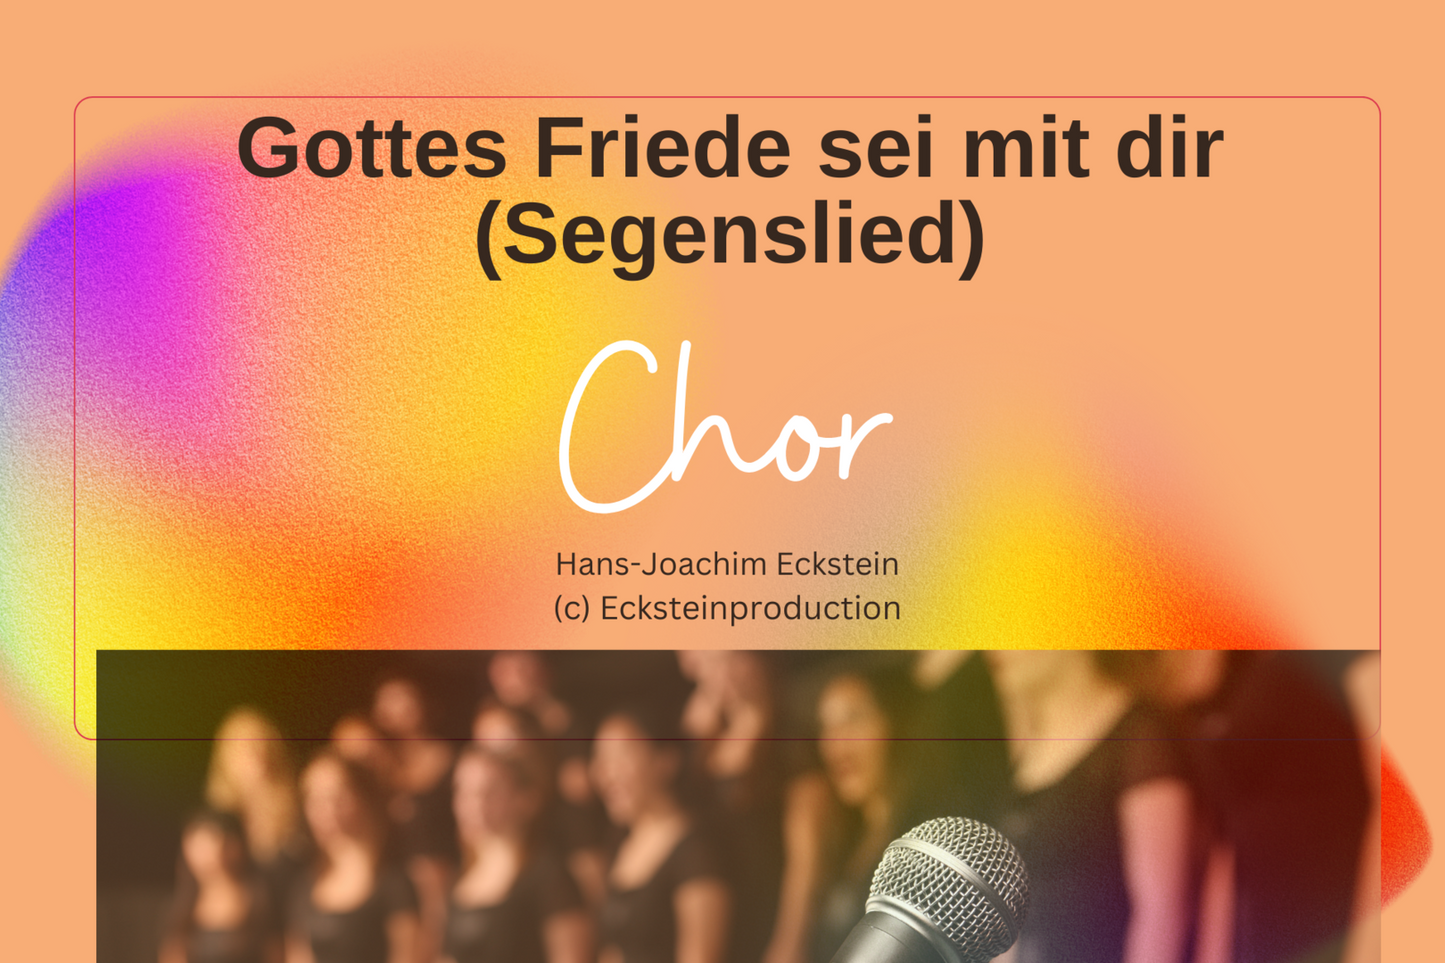 God's peace be with you (choir) Hans-Joachim Eckstein